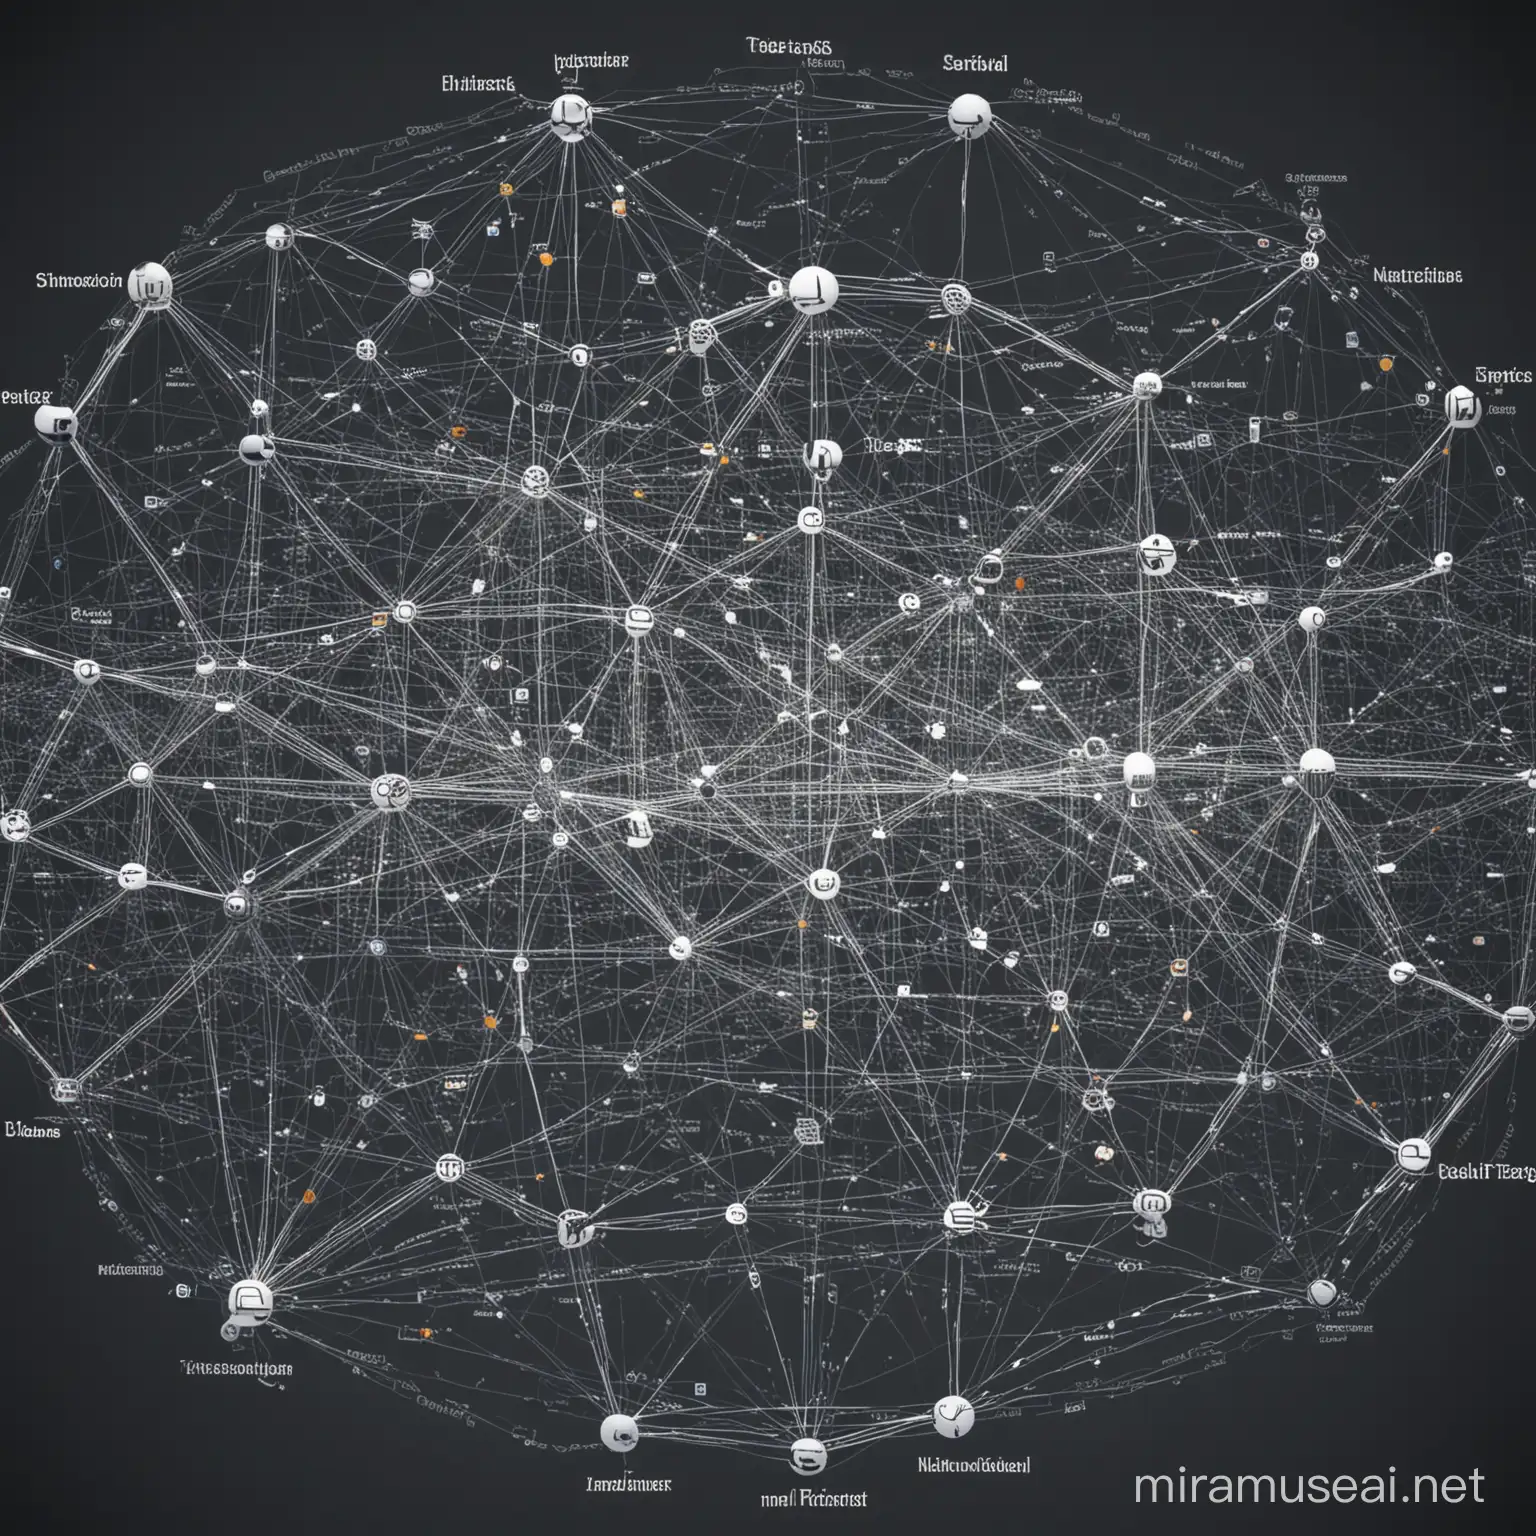 当我们将互联网视为一张可视化的图时，我们看到的是一个庞大而复杂的网络，由无数个节点和连接构成。每个节点代表着一个网站、服务或信息源，而连接则表示这些节点之间的关系和互动。这张图展示了互联网的拓扑结构，包括不同网站之间的层次结构、链接的程度以及它们之间的分类和主题。同时，地图上还显示了网站的地理位置和服务器分布，以及实时的流量和热点数据。整个图像是一个动态的、多维度的视角，能够帮助我们更好地理解和导航互联网世界。